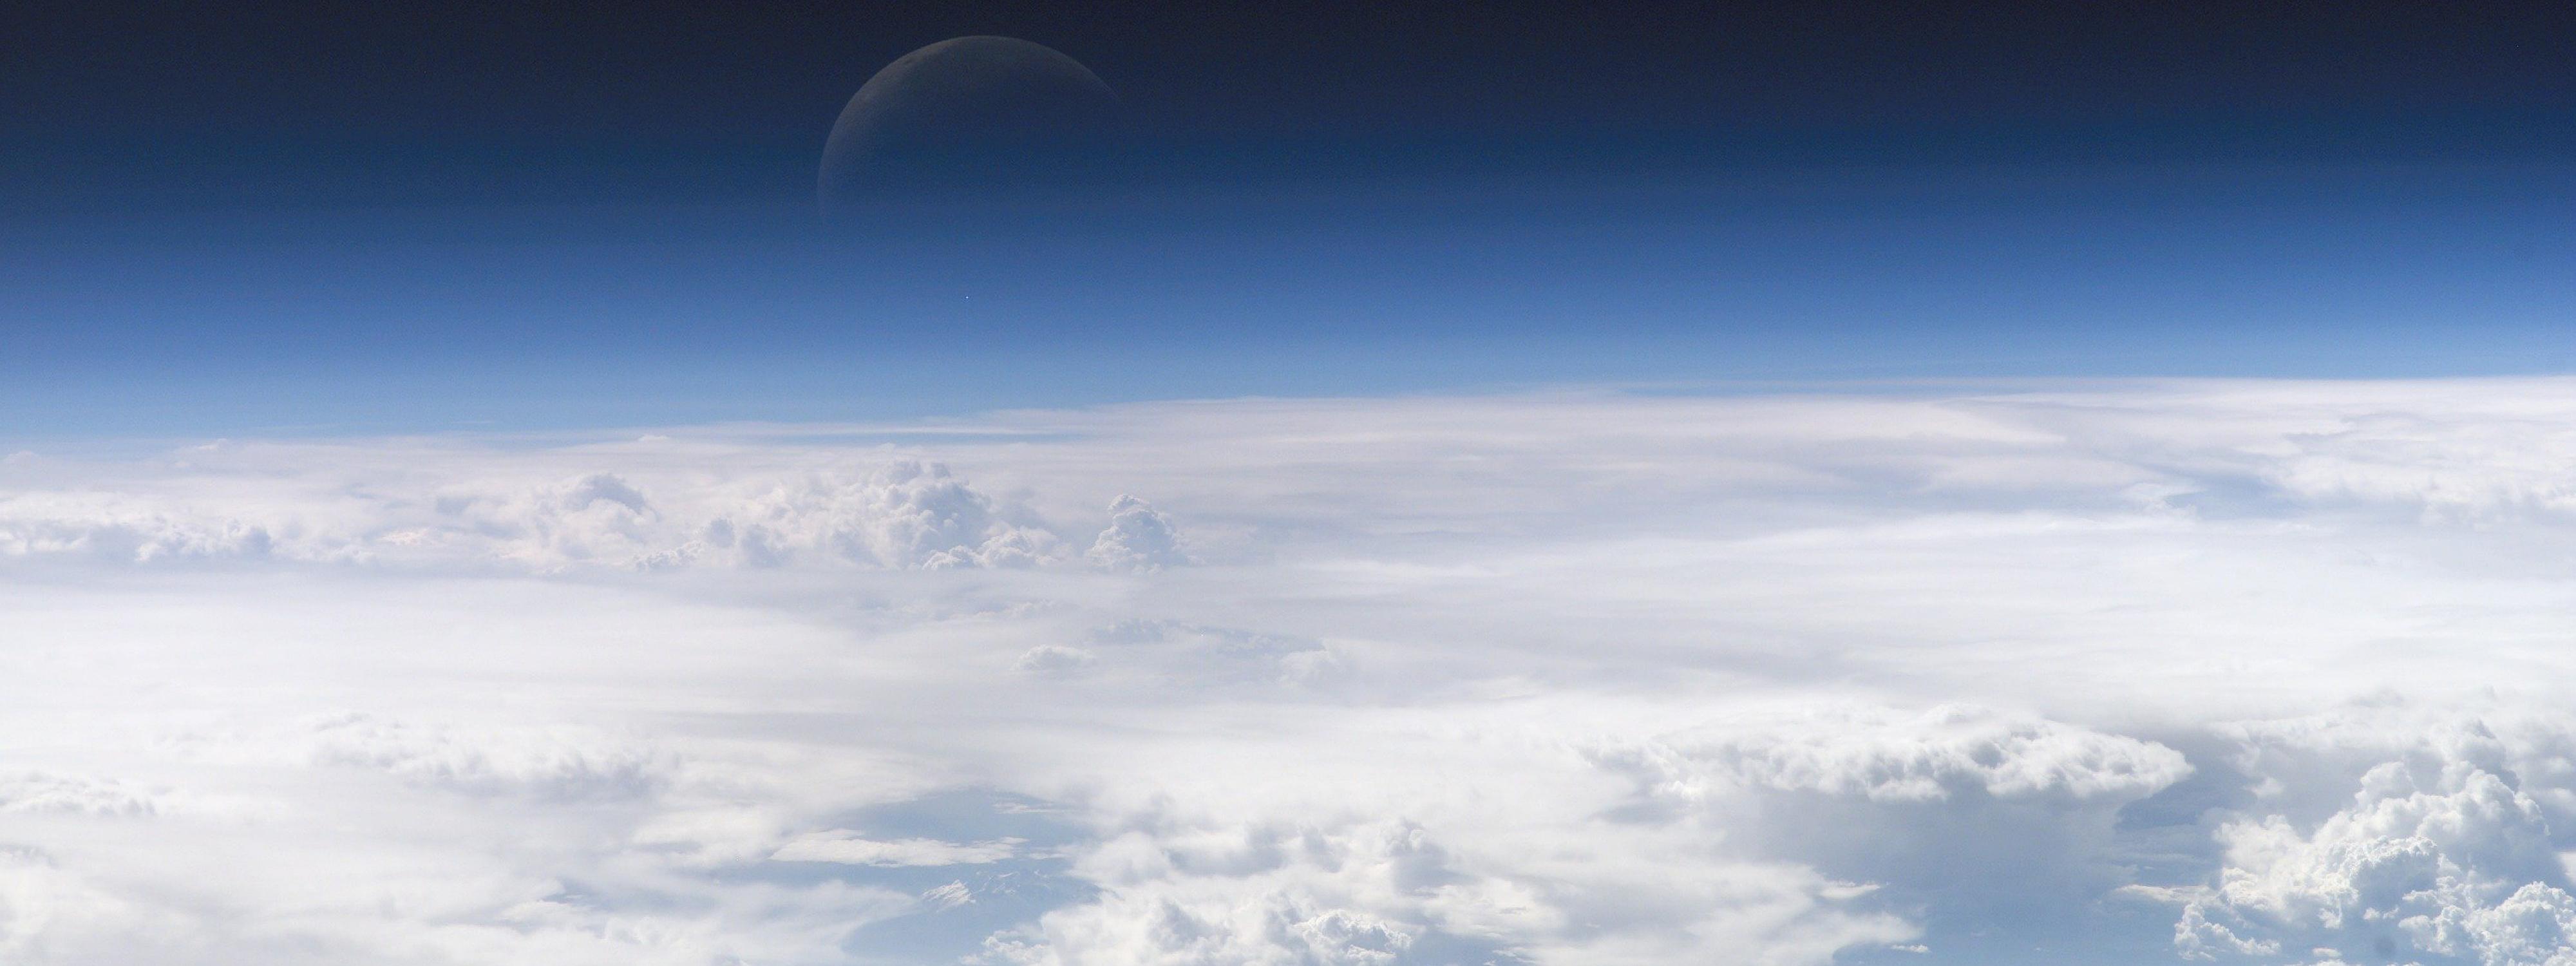 Couches hautes de l'atmosphère terrestre, prise par la Station spatiale internationale au cours de l'Expédition 13 au-dessus de la Mer de Chine méridionale, NASA